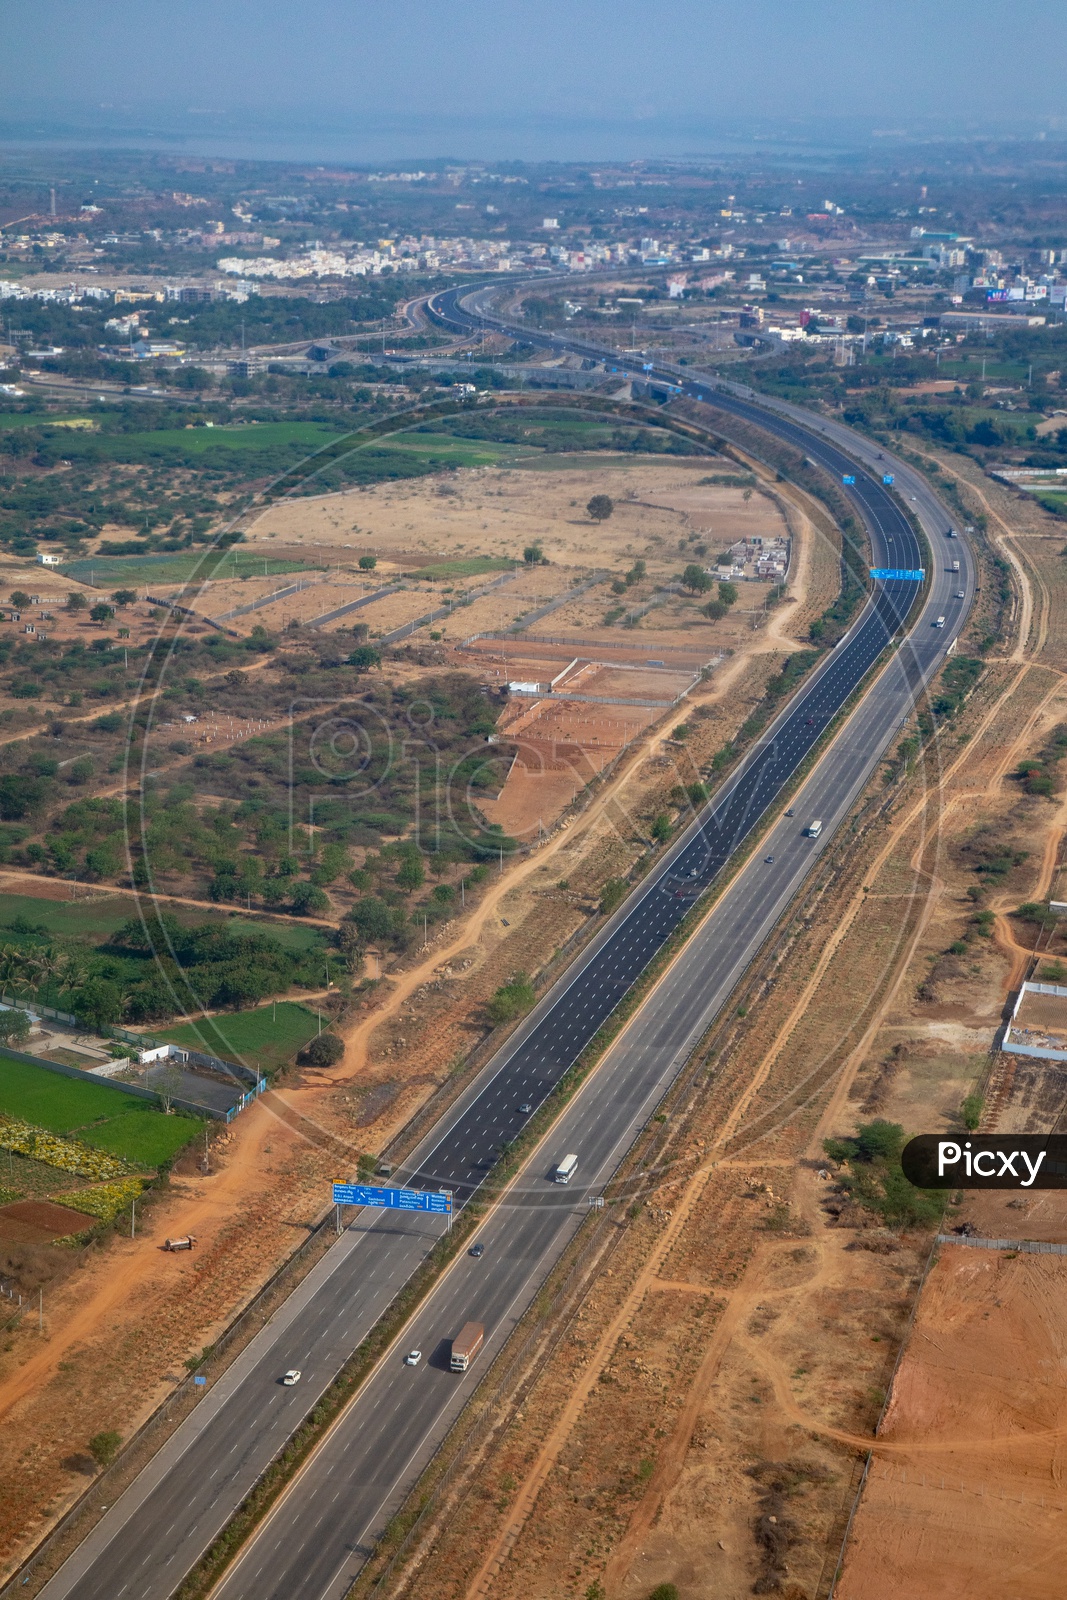 ఓఆర్‌ఆర్‌ సమీపంలో 25 వేల ఎకరాల్లో ఇండస్ట్రియల్‌ సిటీ.. రియాల్టీ  ప్రాజెక్టులకు భారీ డిమాండ్ | Hyderabad outer ring road real estate market  grow up with industrial city-10TV Telugu